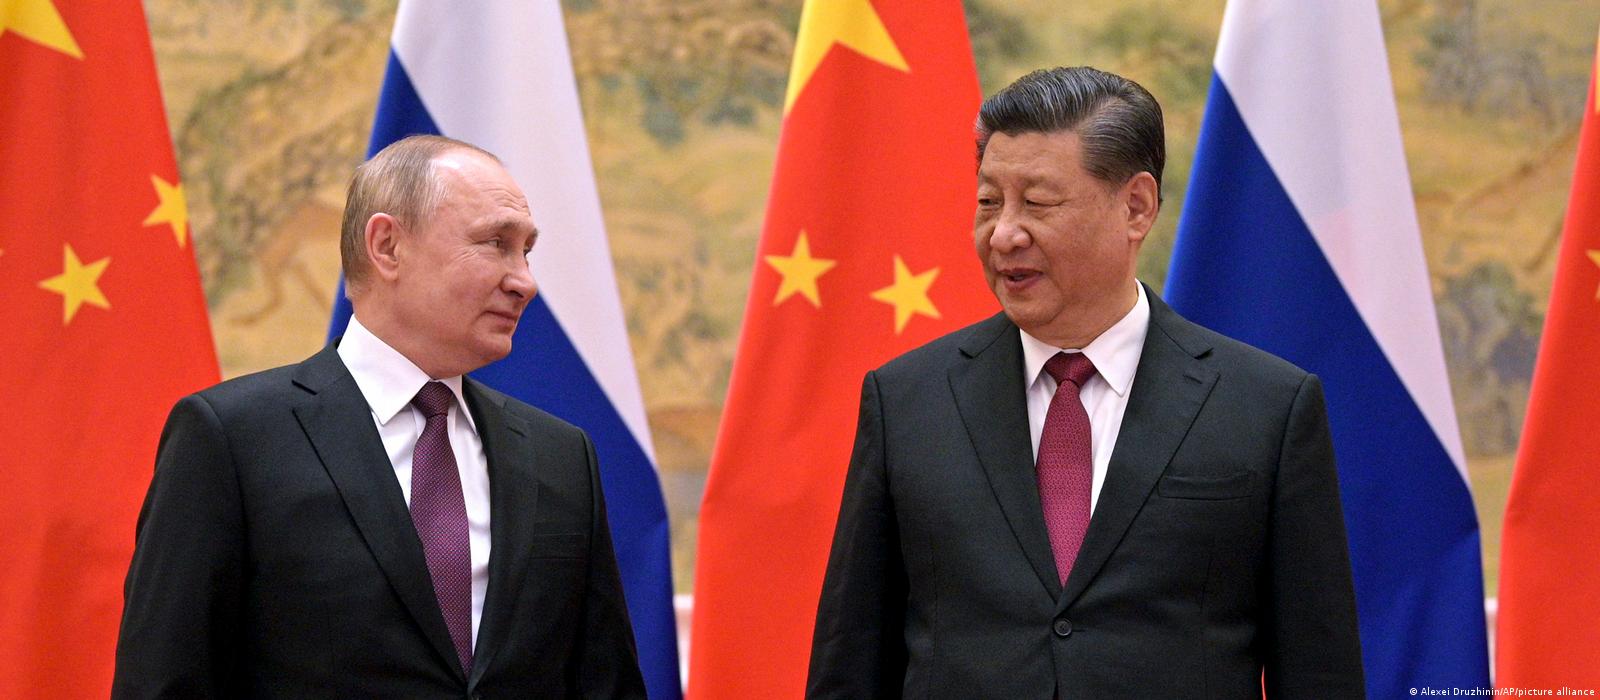 Die vollständige Rede von Xi und Putin auf dem SCO-Gipfel in Samarkand